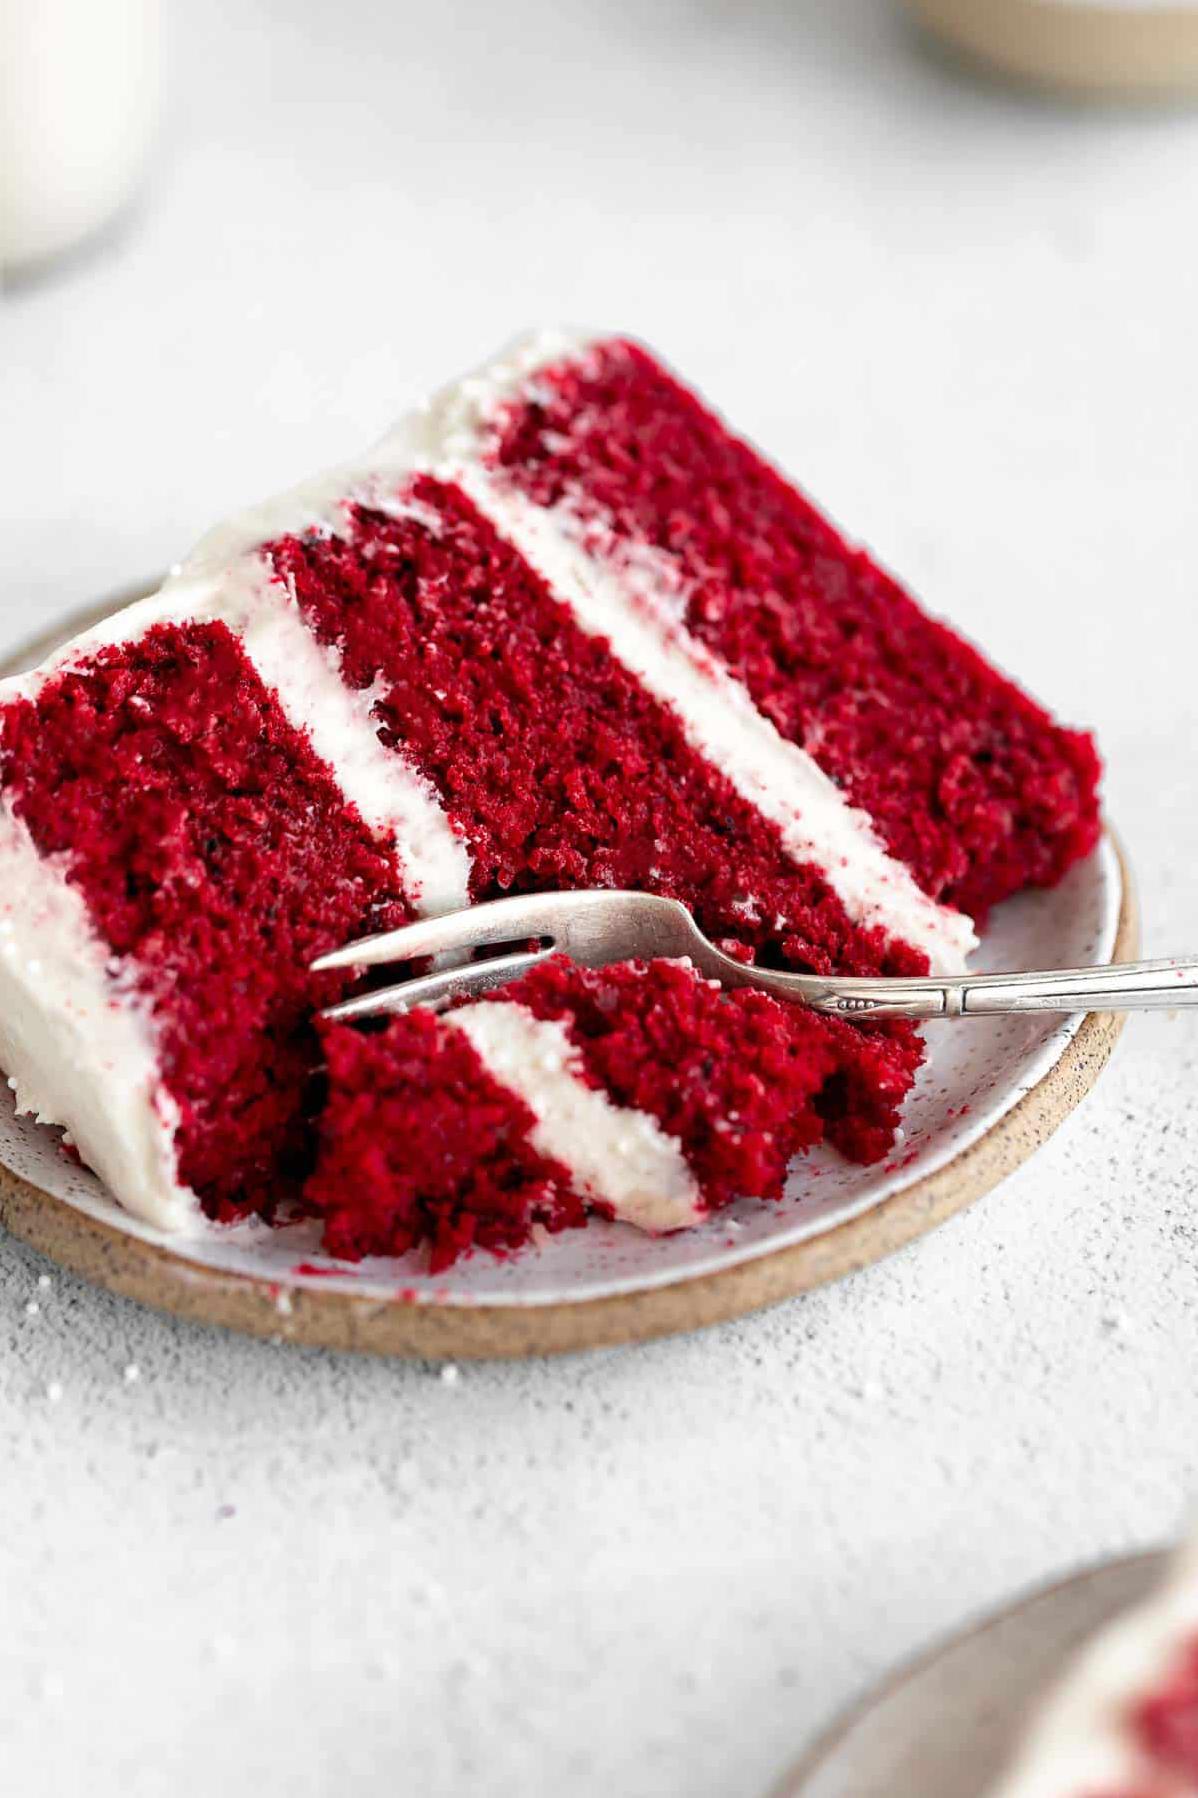  Moist and delectable: Gluten-free red velvet cake recipe